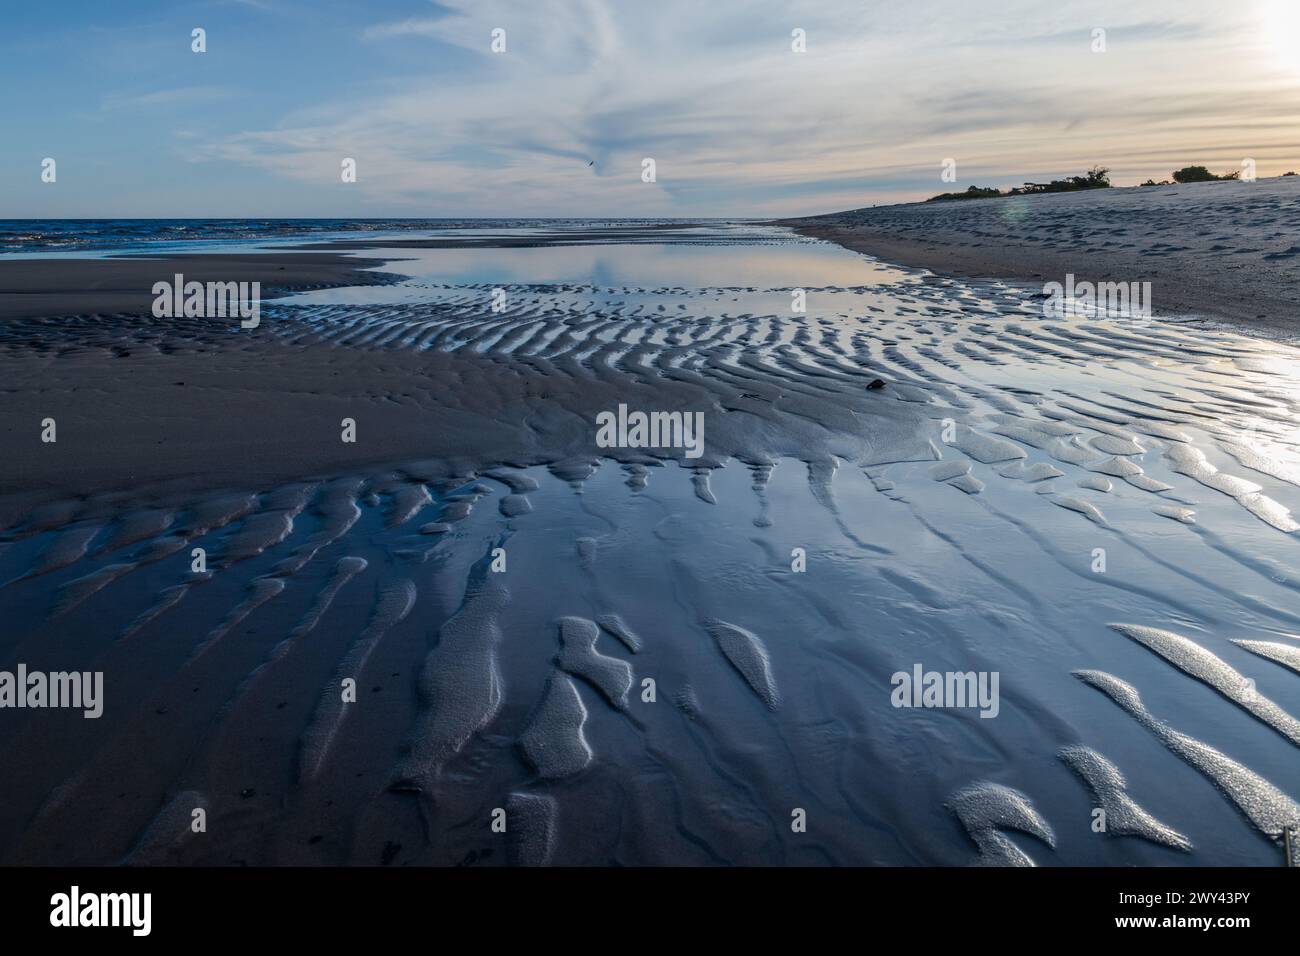 Das Bild ist von einem Strand mit einer Sandküste. Der Sand ist von kleinen Wellen bedeckt, die den Eindruck eines sanften, ruhigen Ozeans erwecken Stockfoto